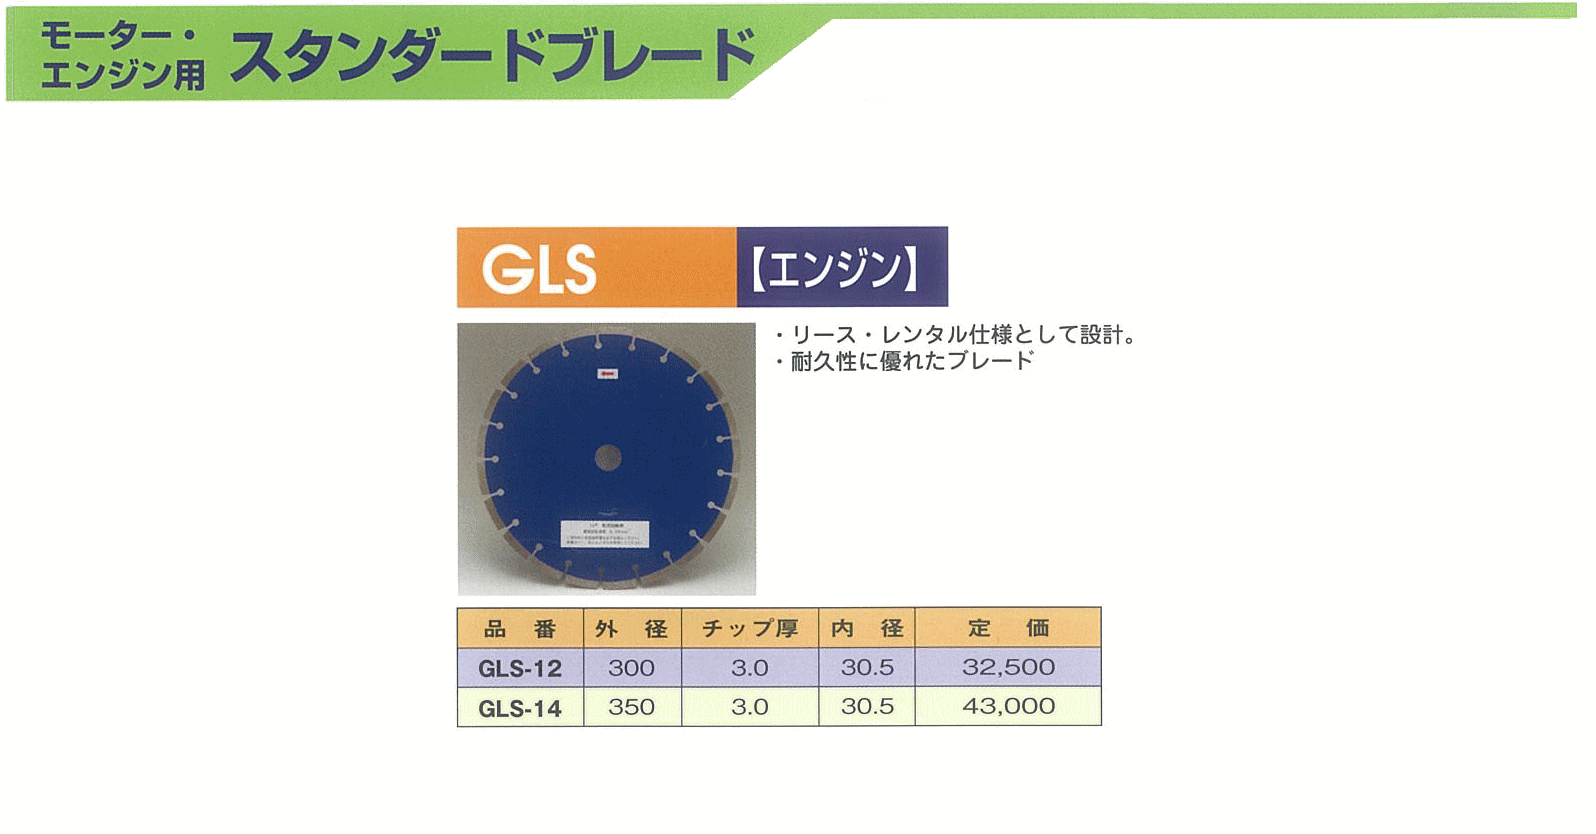 ナニワ(NANIWA) ダイヤモンドブレード エンジン用 CH-121930,574円